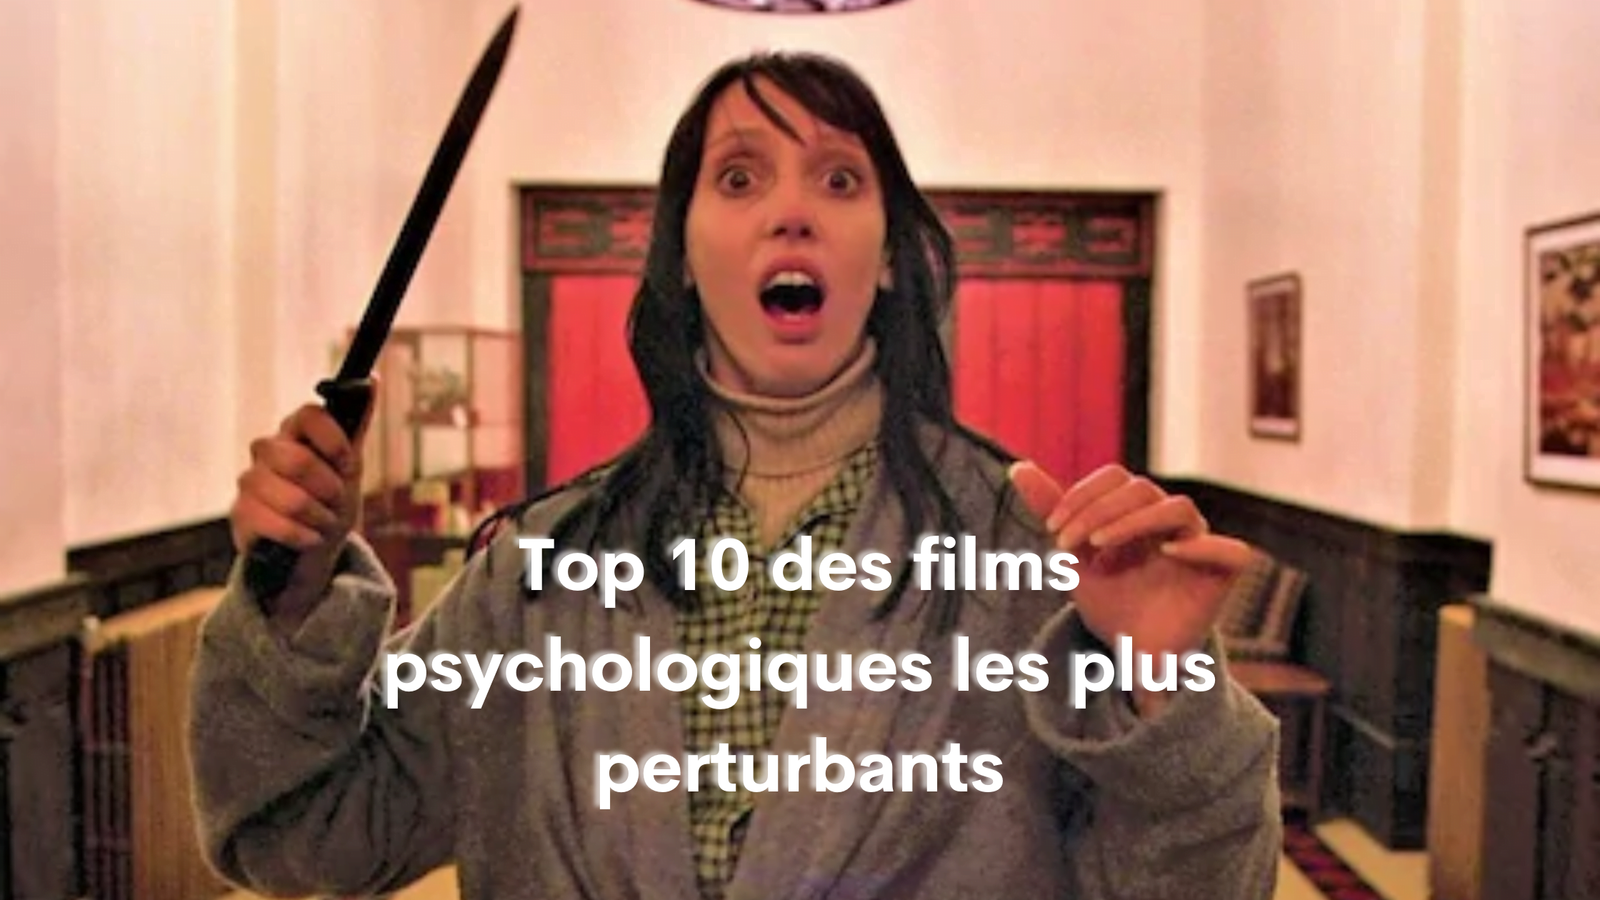 Top 10 des films psychologiques les plus perturbants